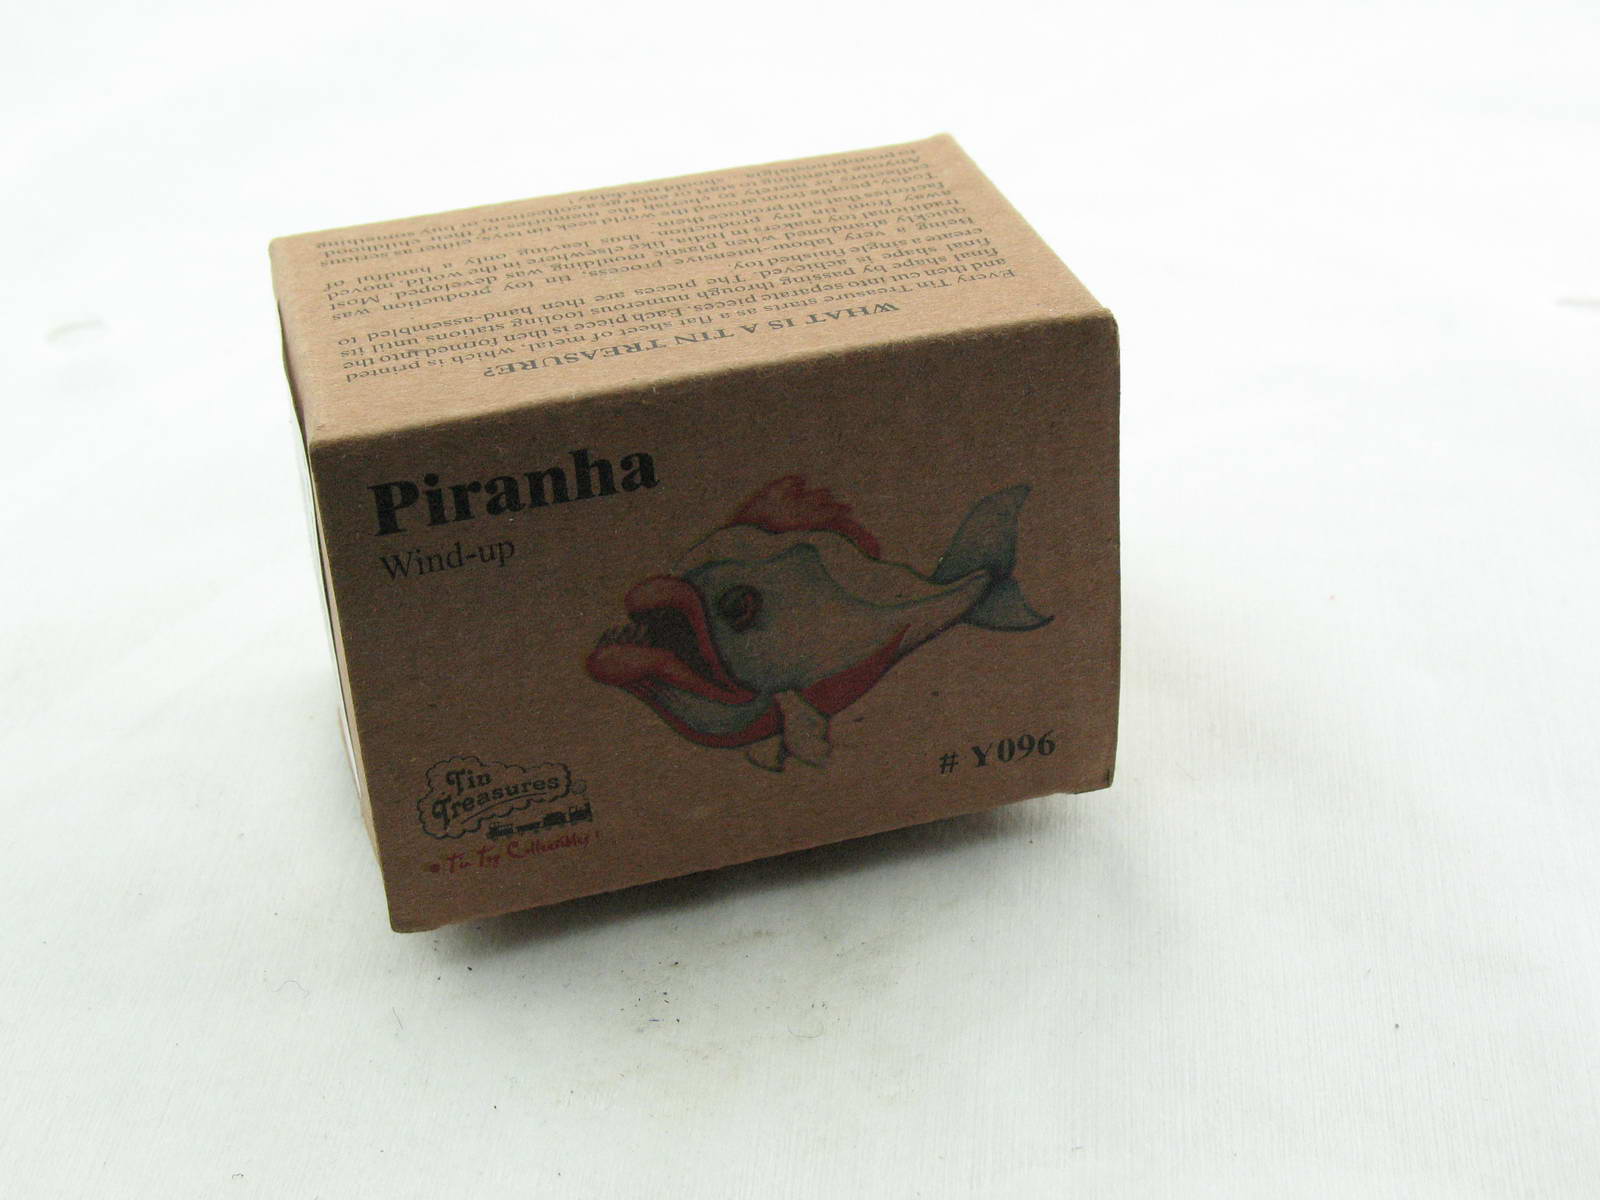 Blech-Raubfisch Piranha mit Uhrwerk  5387096 Blechspielzeug 